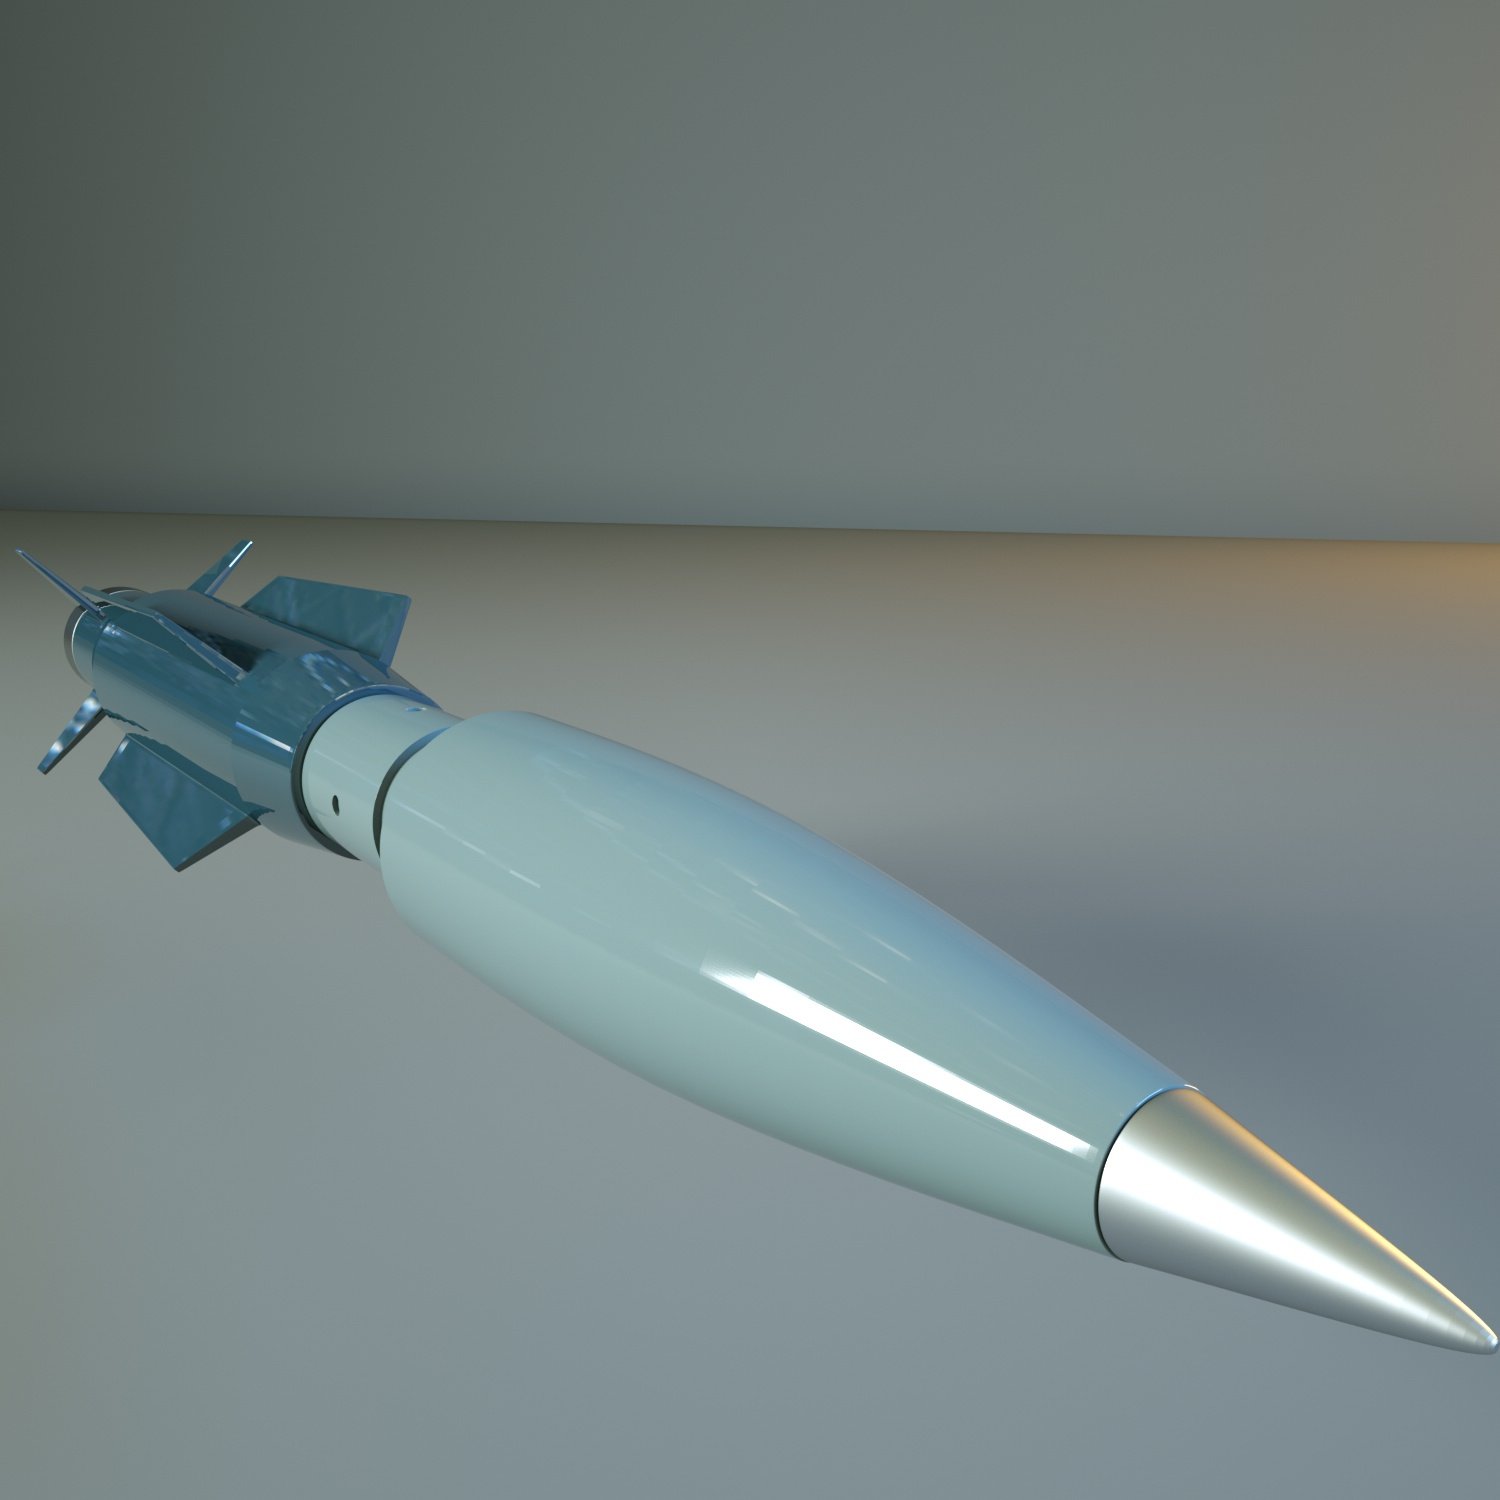 Rust rocket 3d model фото 96